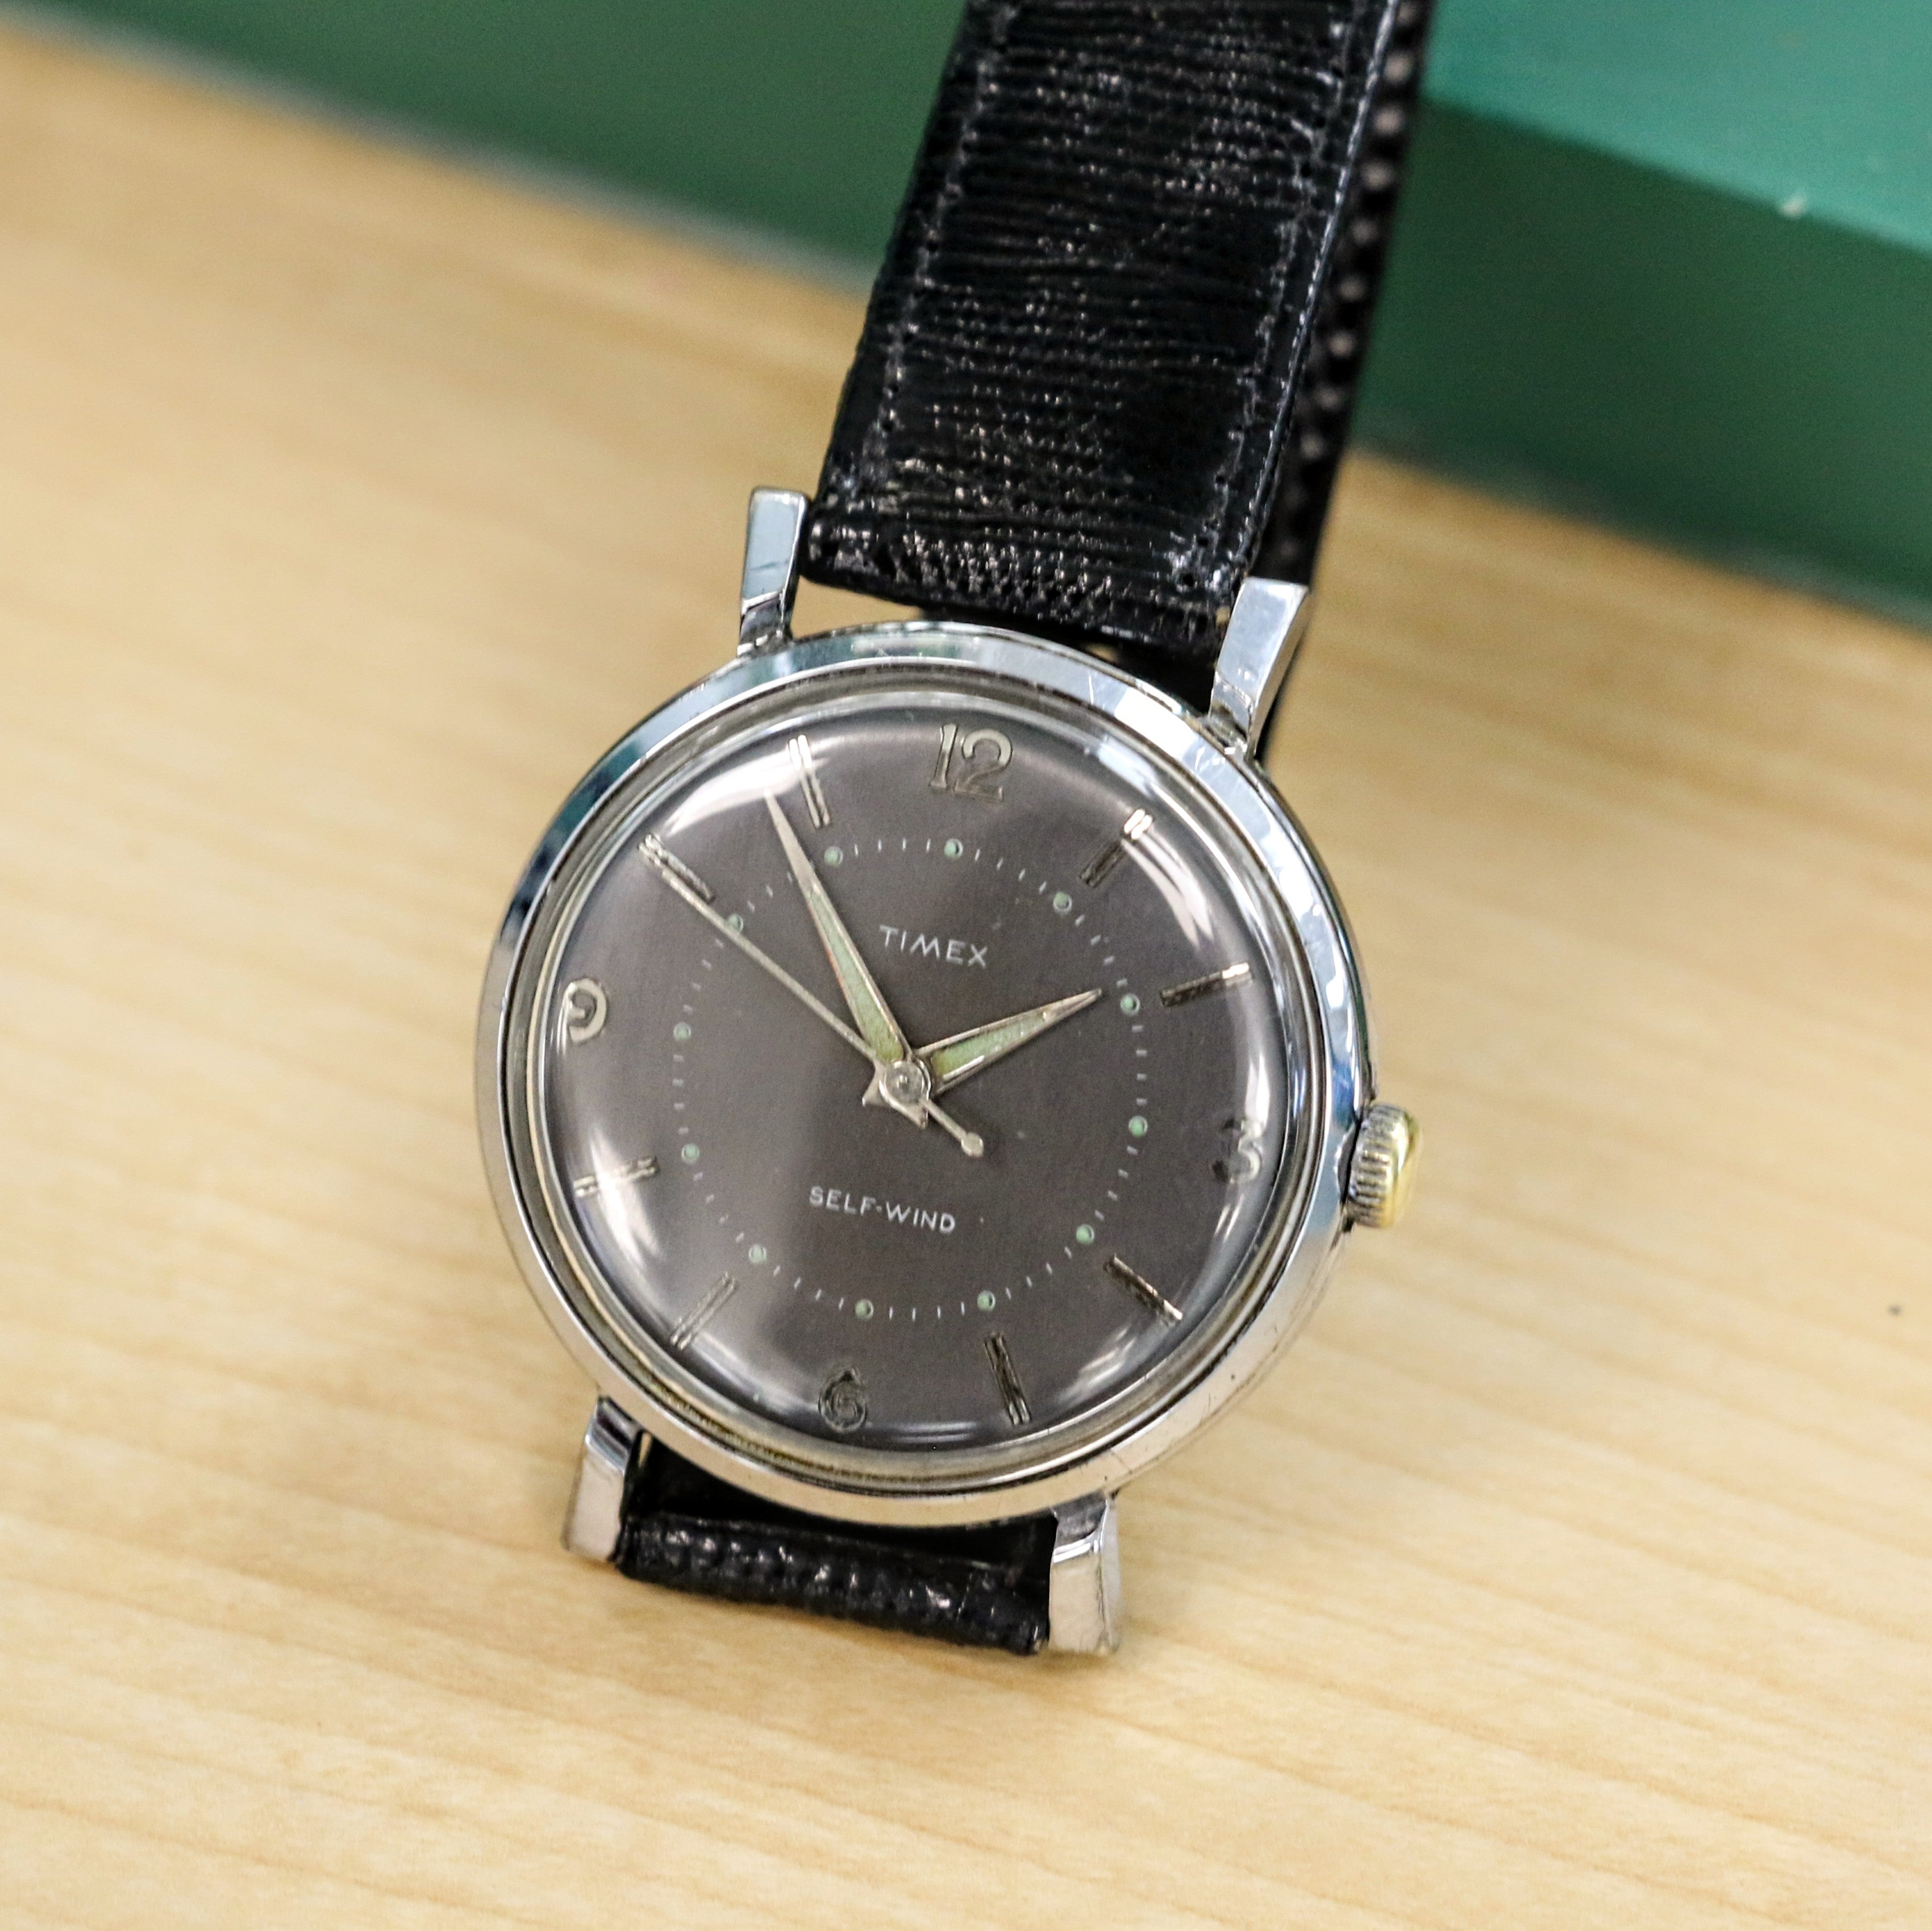 Vintage Timex Self-Wind Automatic Watch 36.5mm Waterproof Case & Fancy Lugs Wristwatch